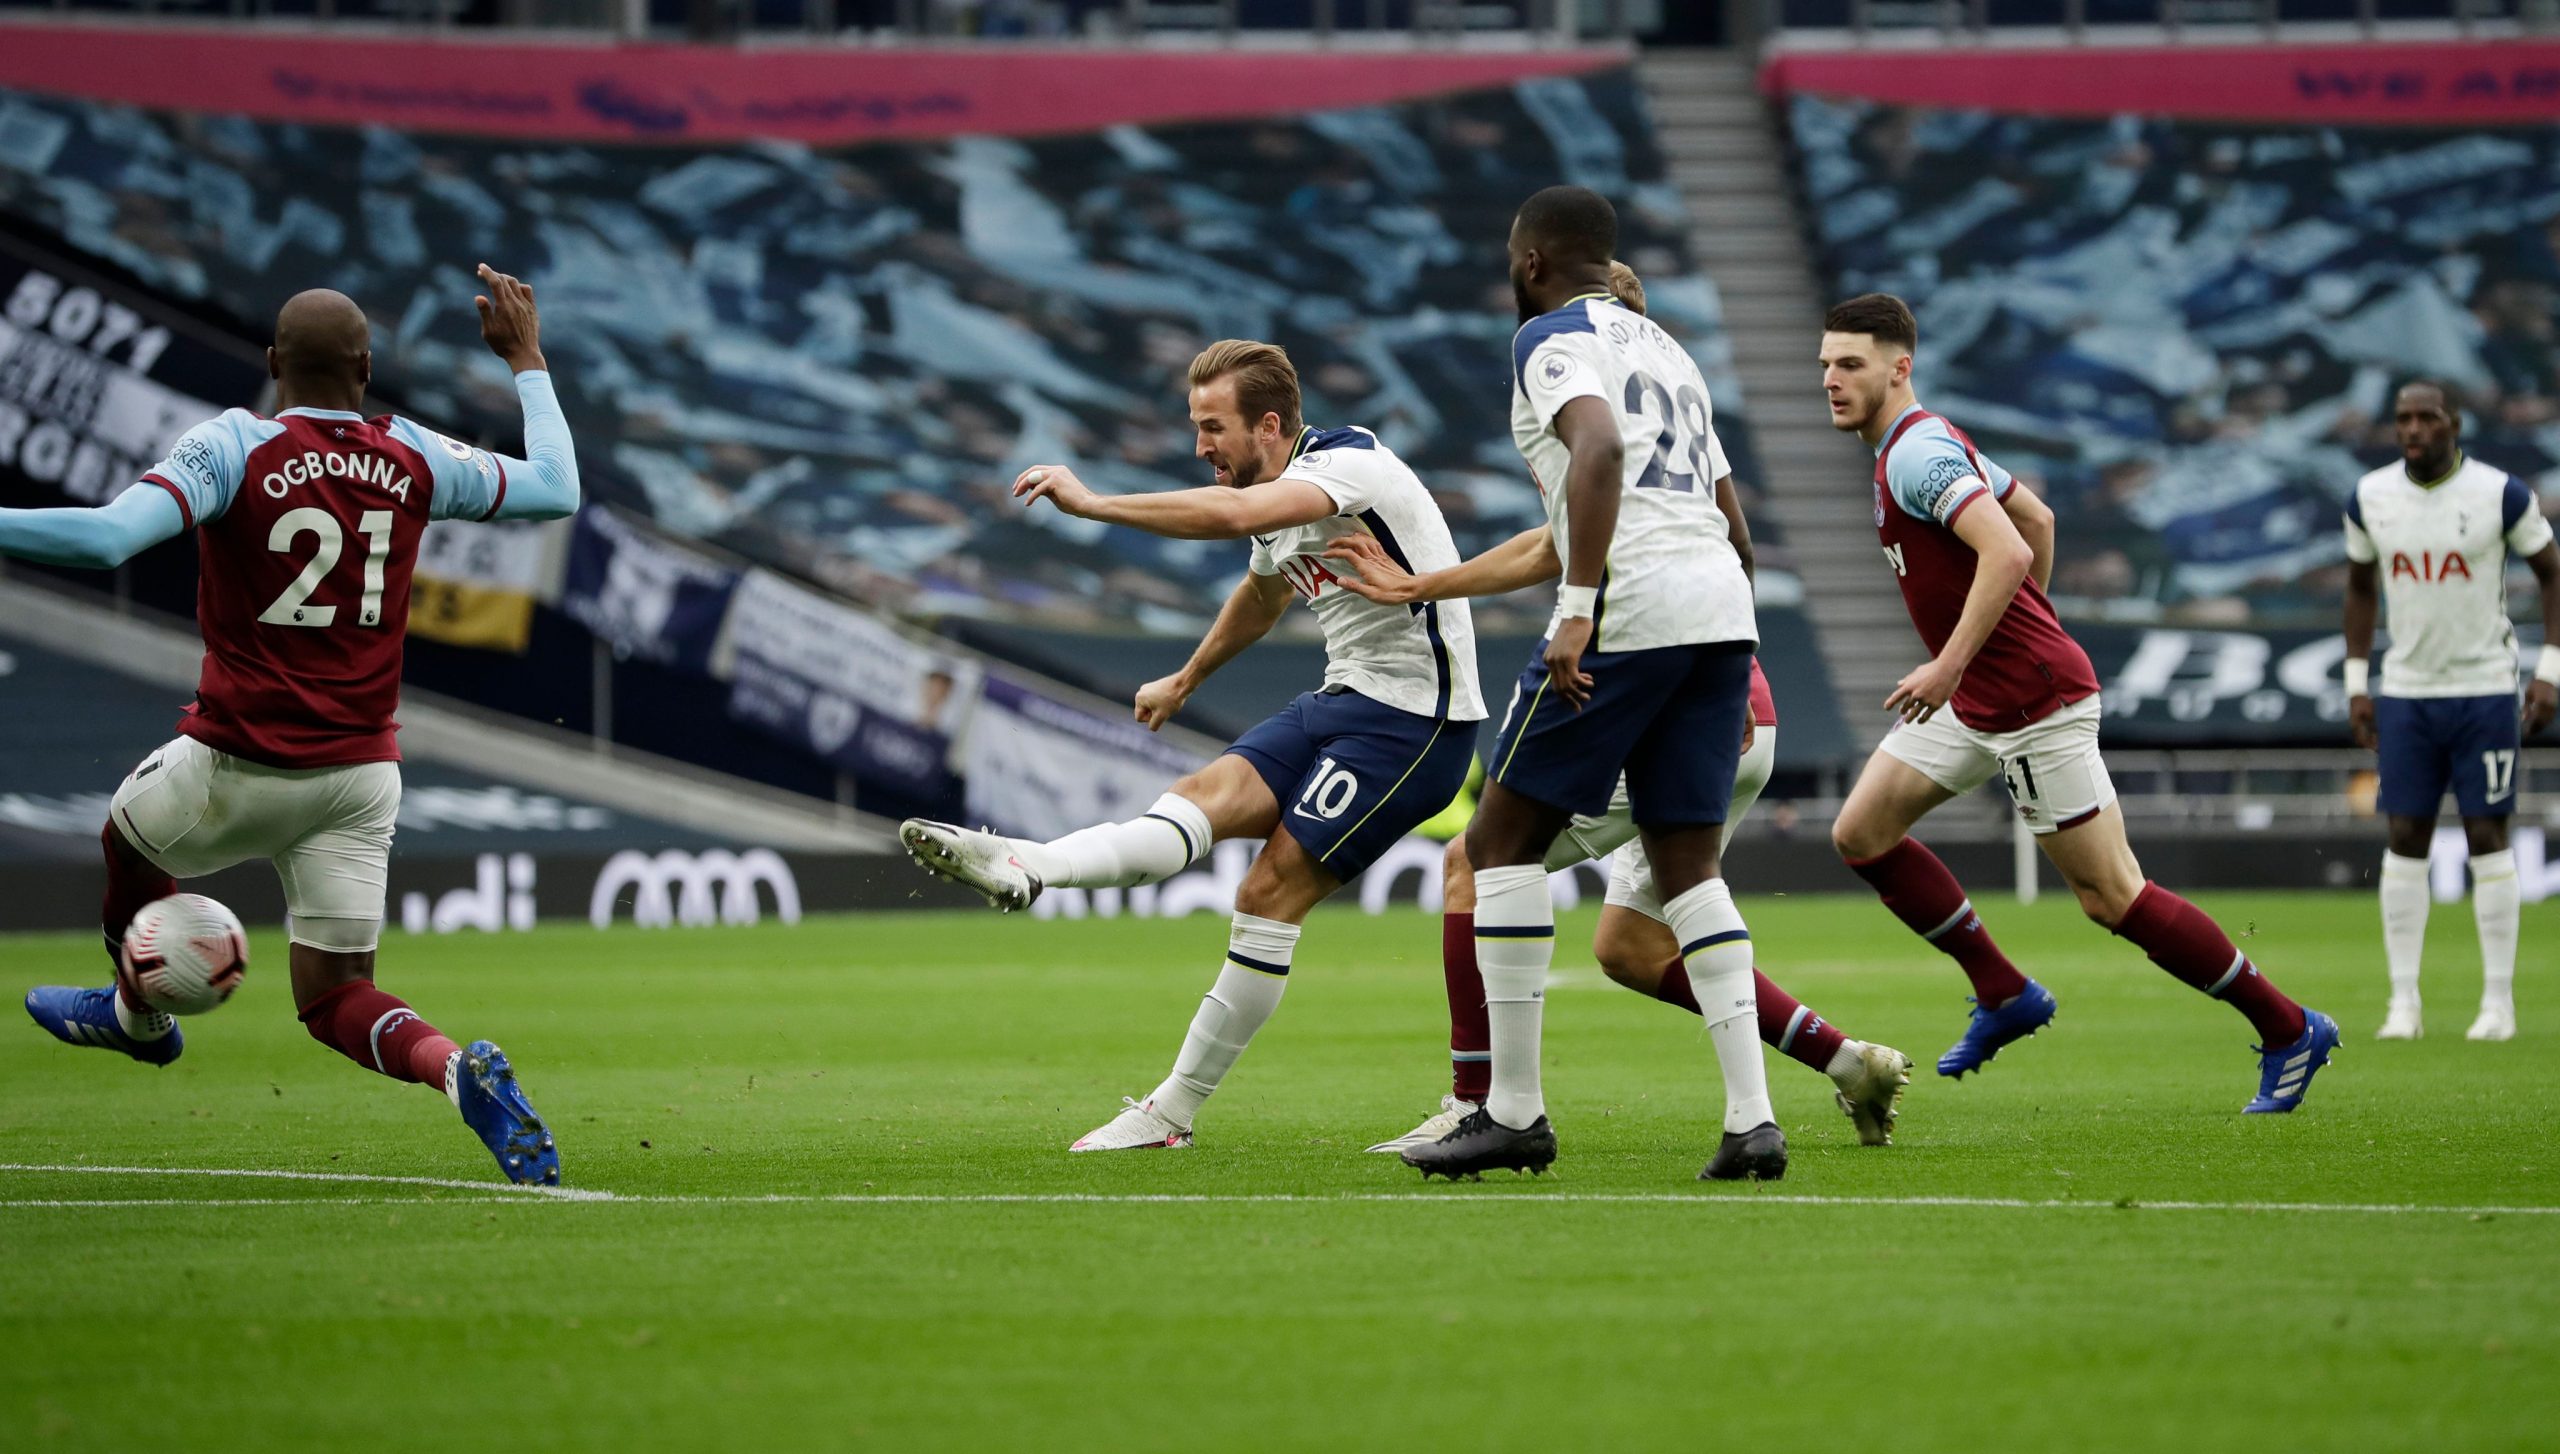 Harry Kane has scored 200 goals for Tottenham